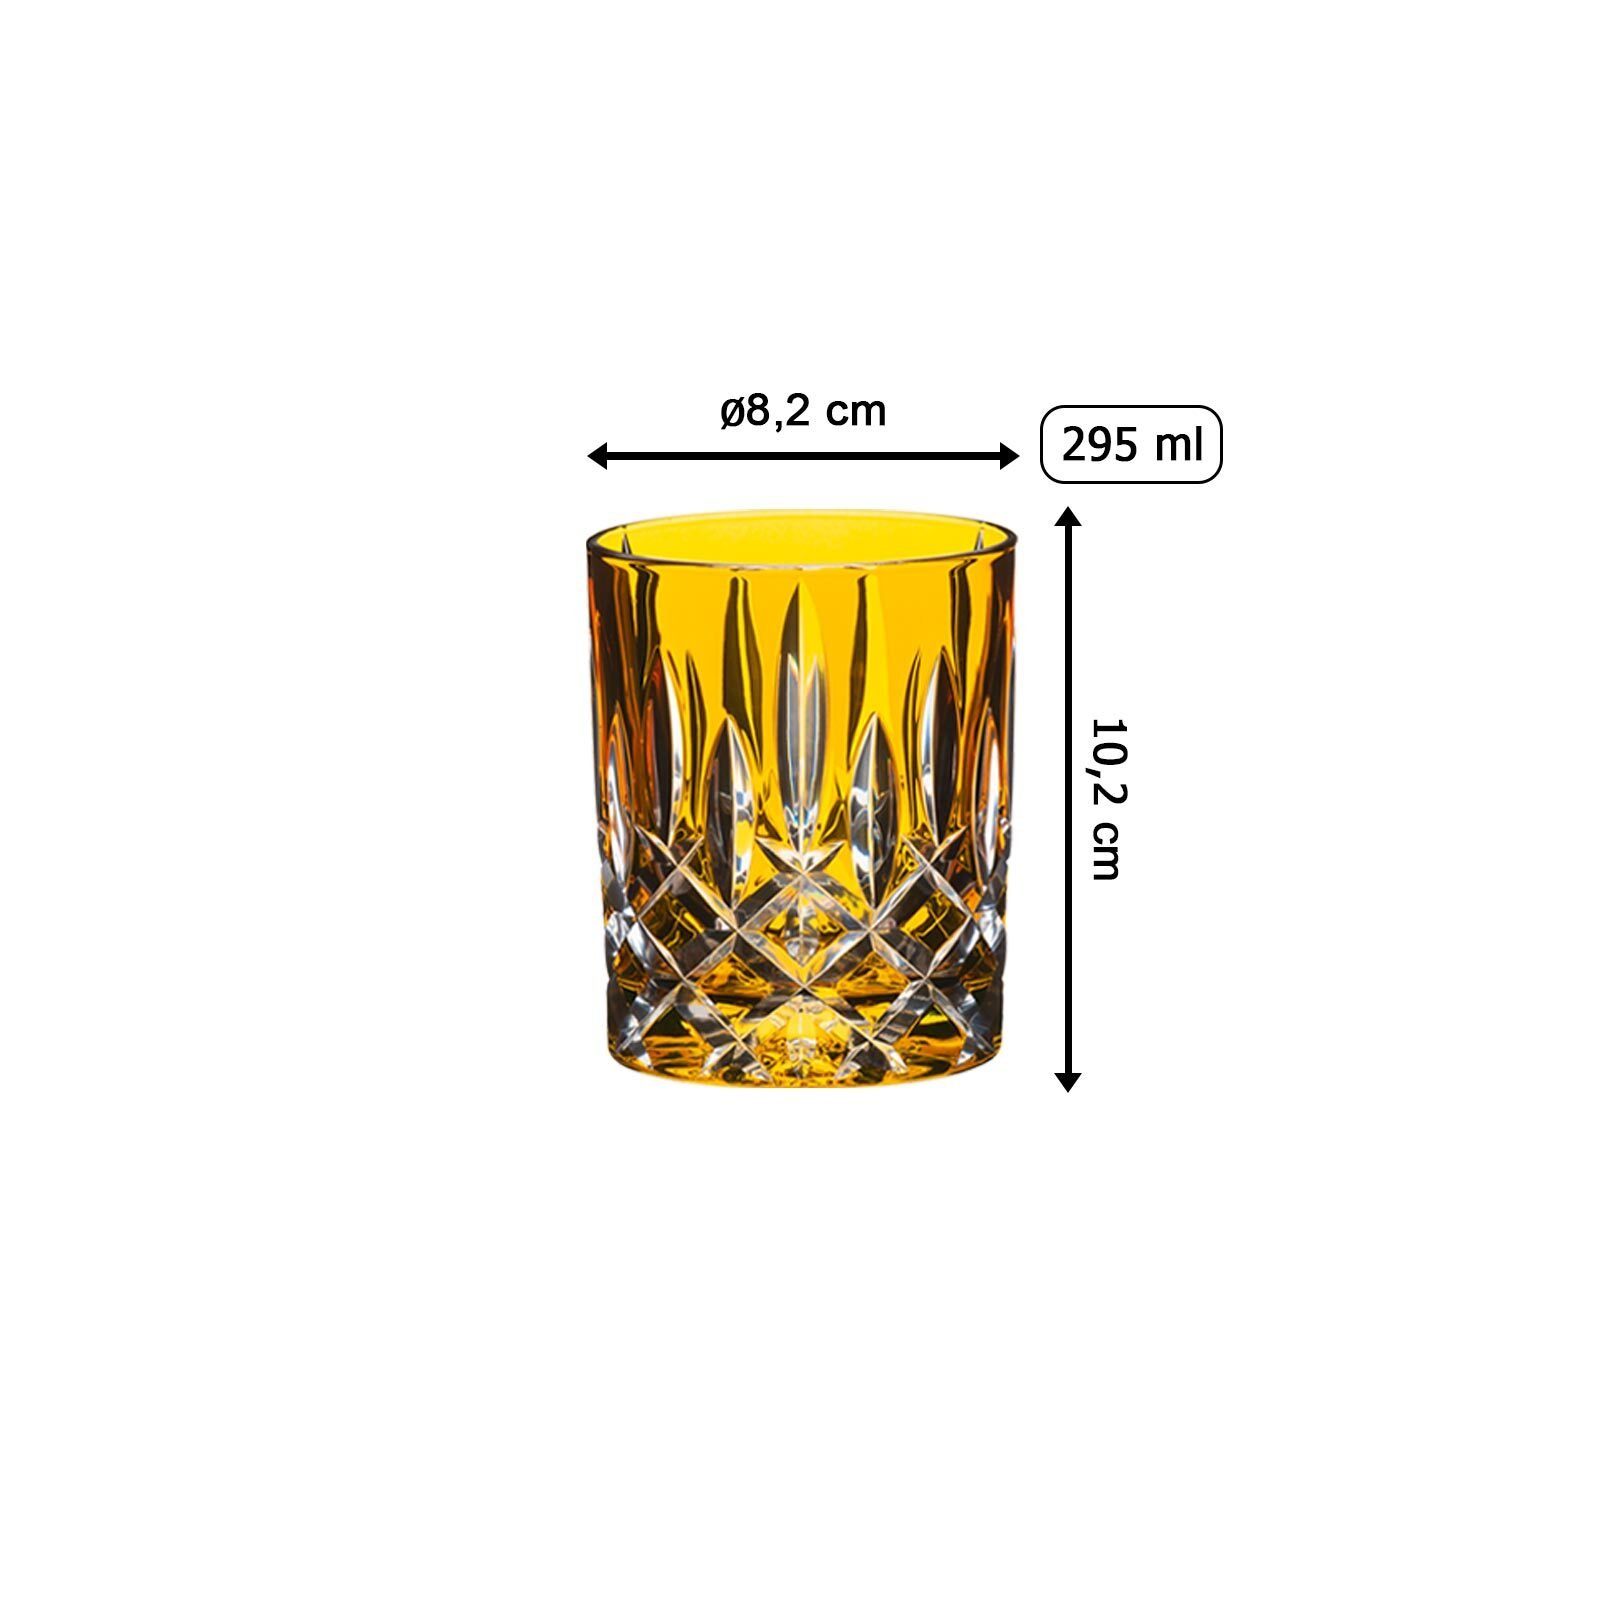 295 Whiskyglas Whiskyglas Glas Laudon Glas Bernstein ml, RIEDEL